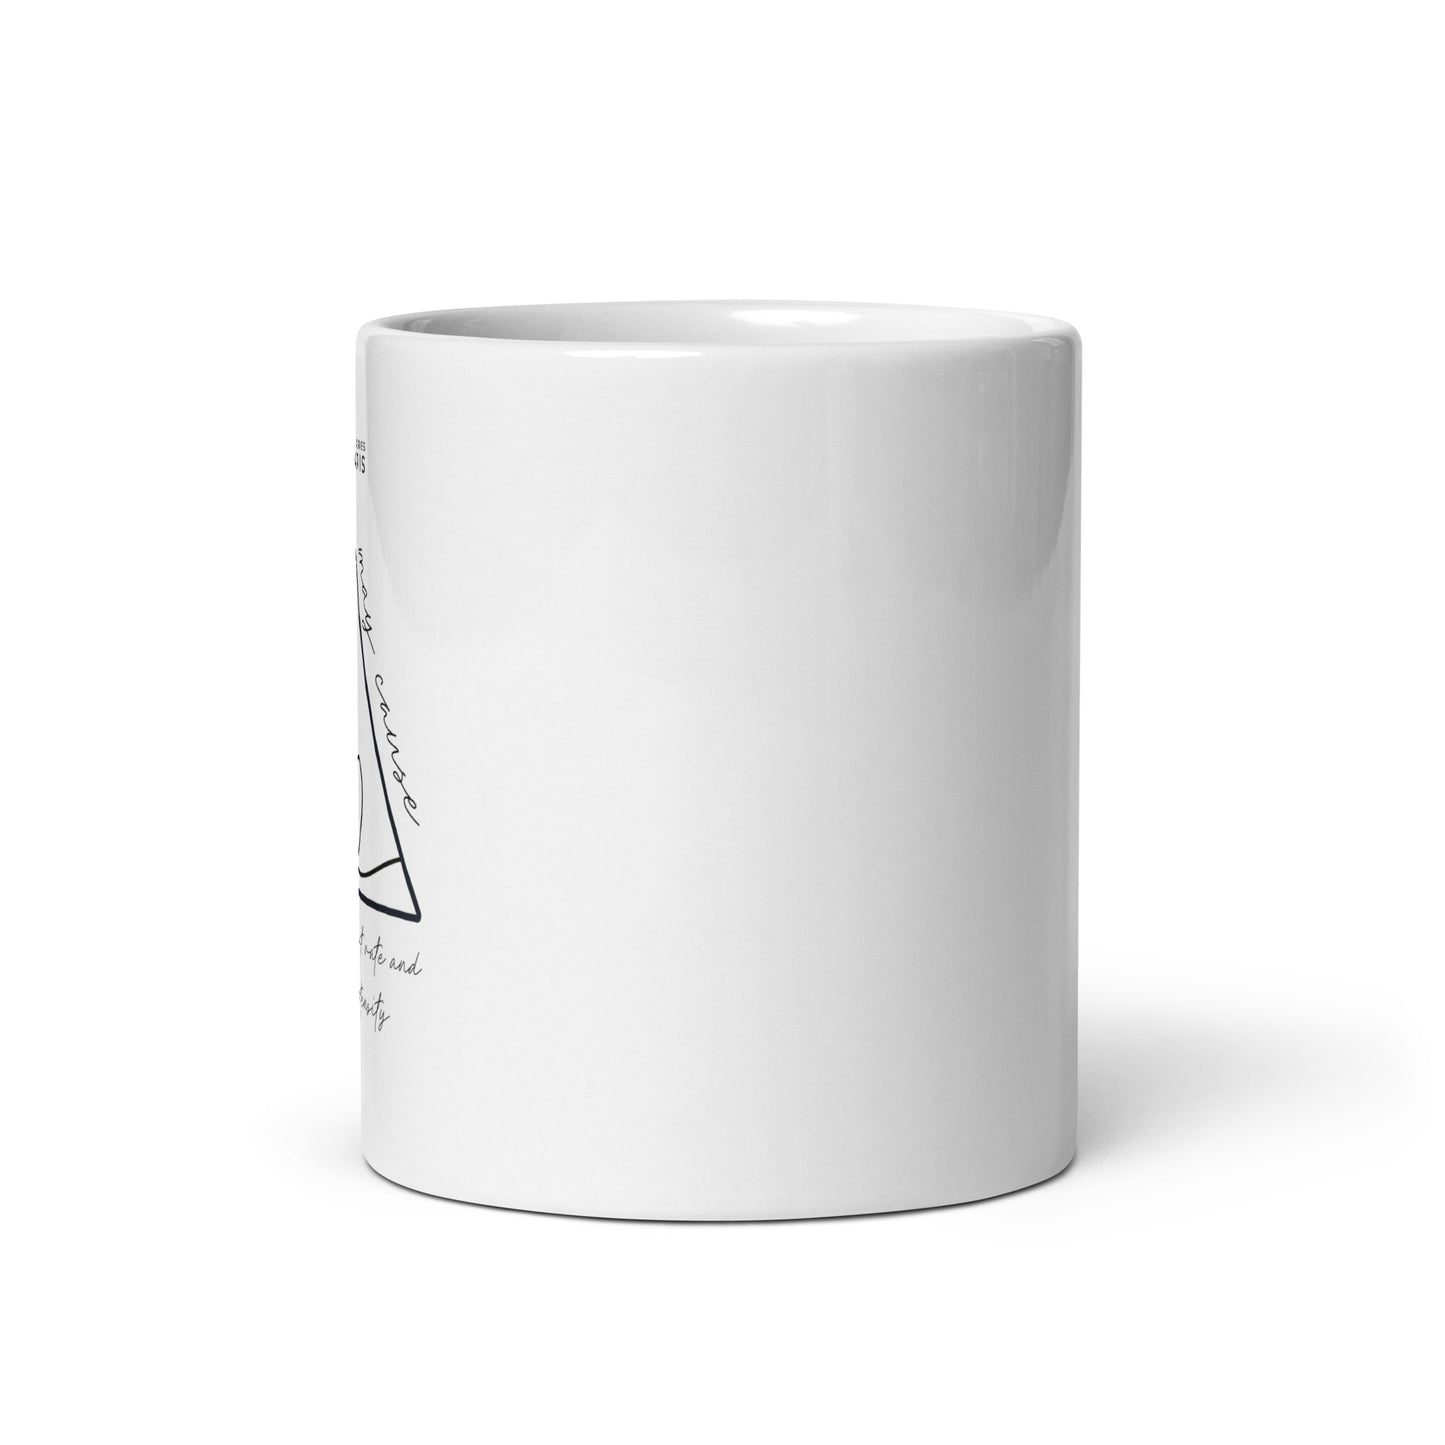 The Randall Series Warning White Glossy Mug